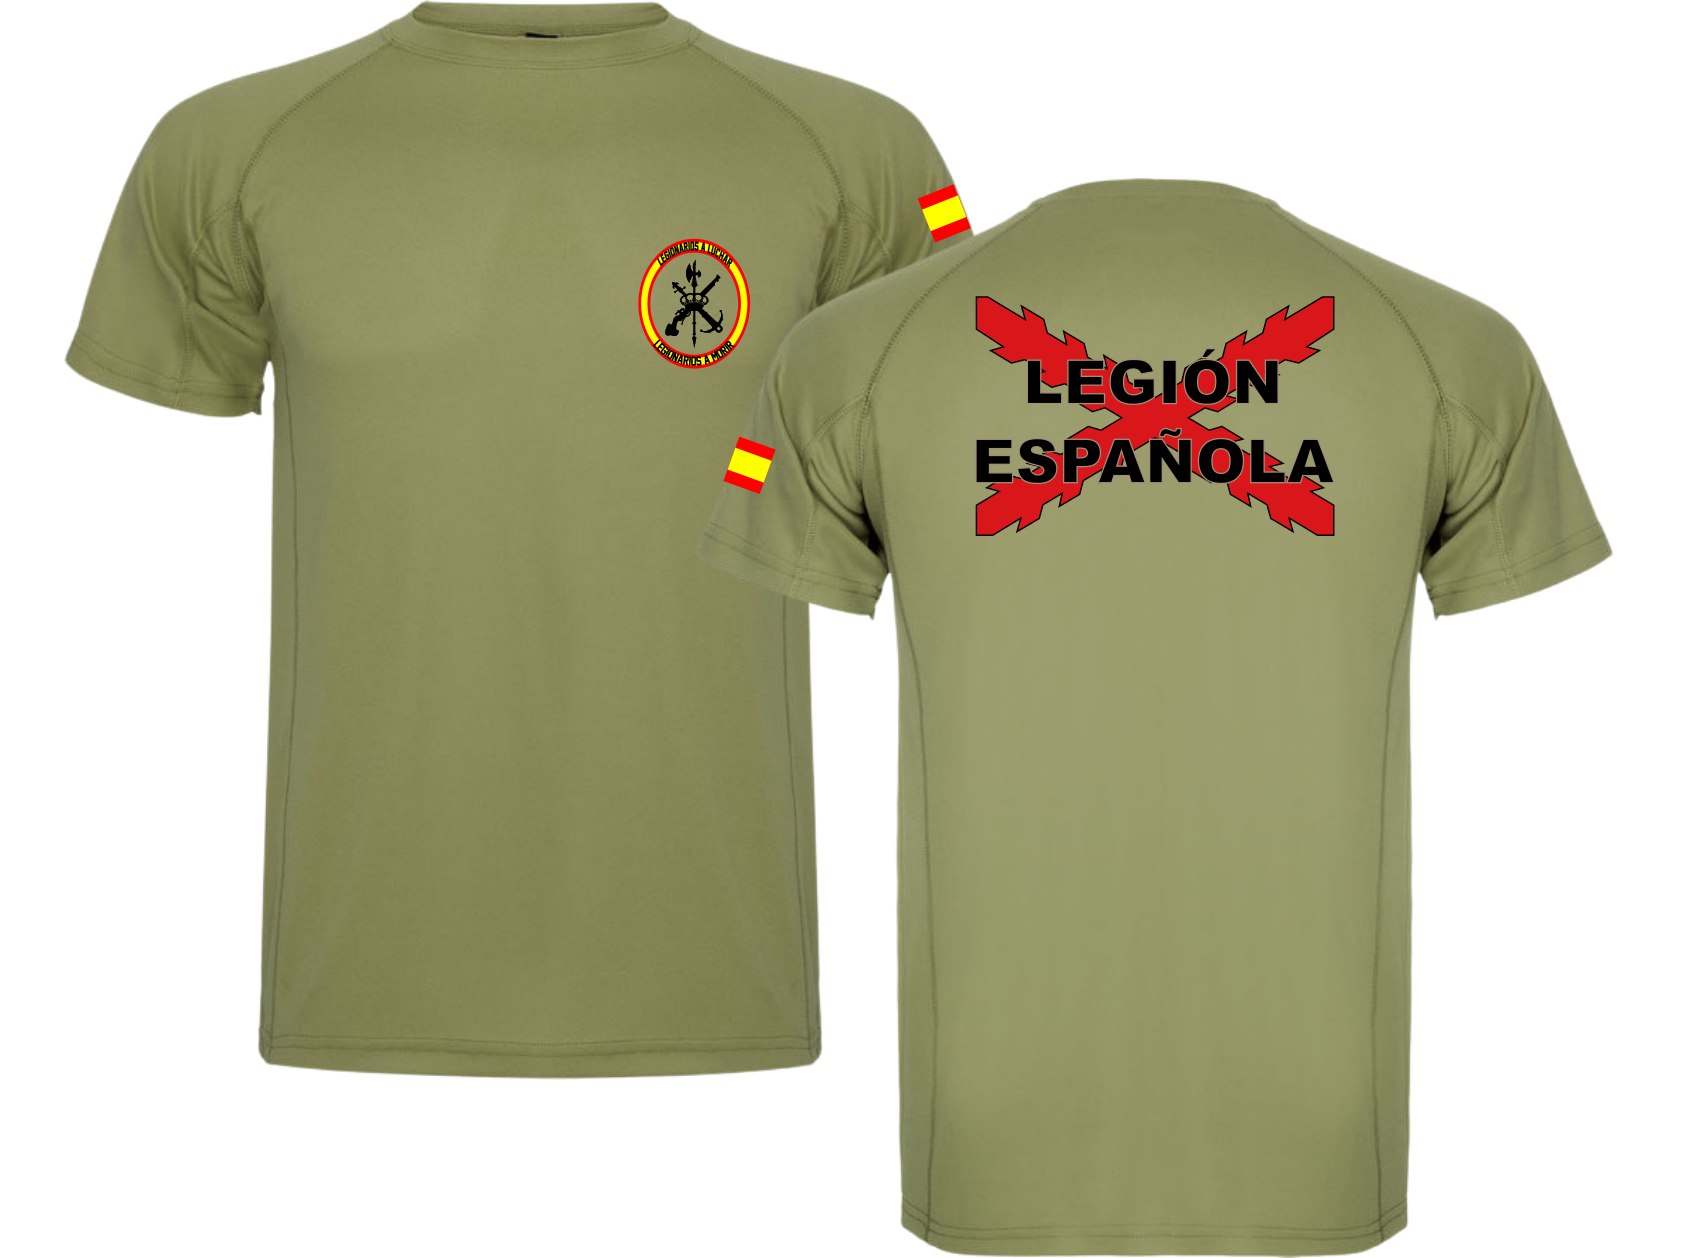 Suministro tuyo Zanahoria Camiseta técnica Legión Española – Tienda Militar